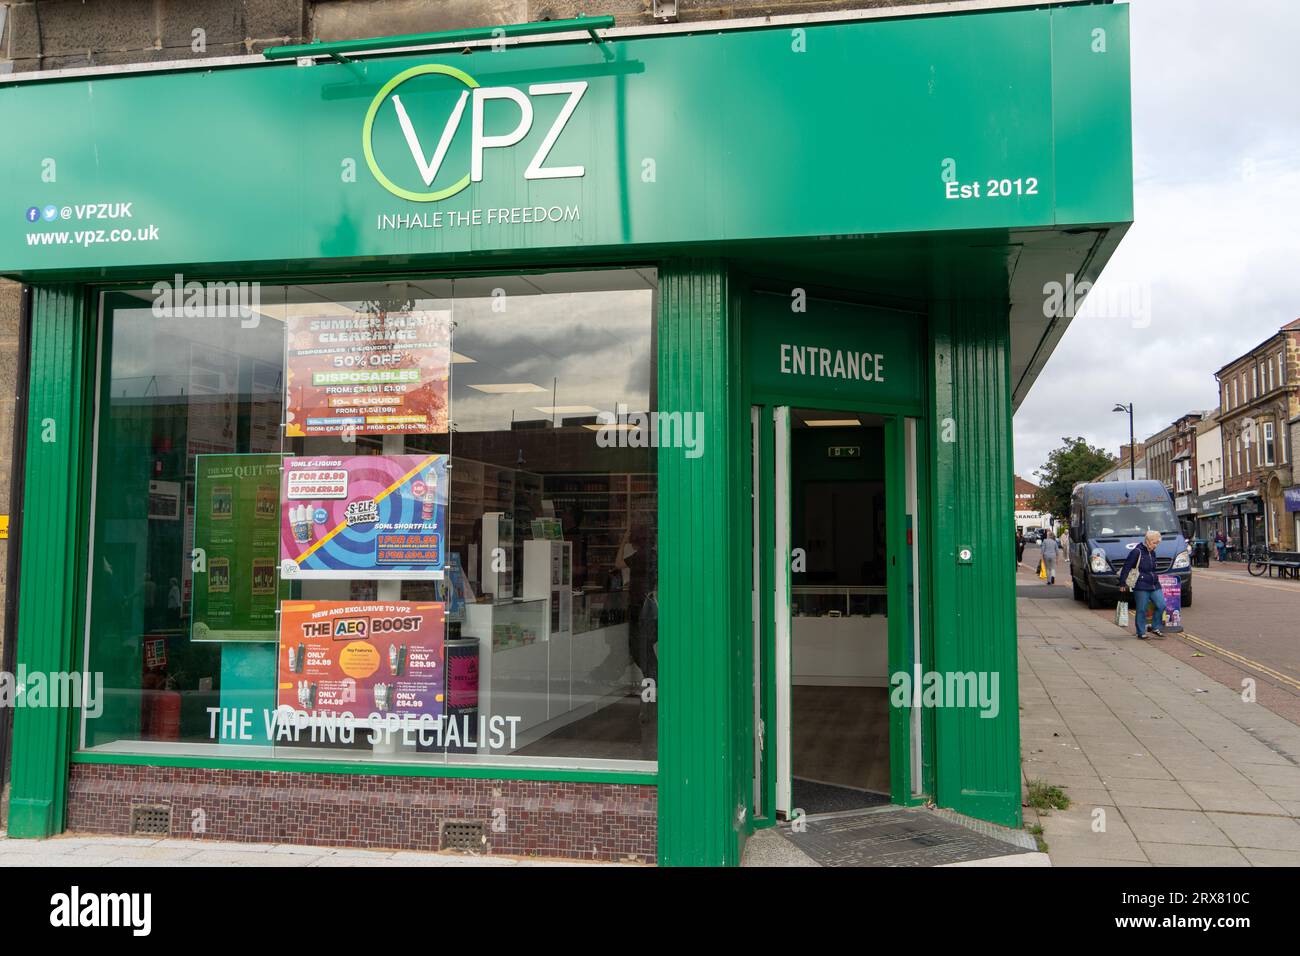 VPZ - Un negozio di svapo a North Shields, North Tyneside, nel centro della città del Regno Unito, ha pubblicità dai colori vivaci nella finestra. Foto Stock